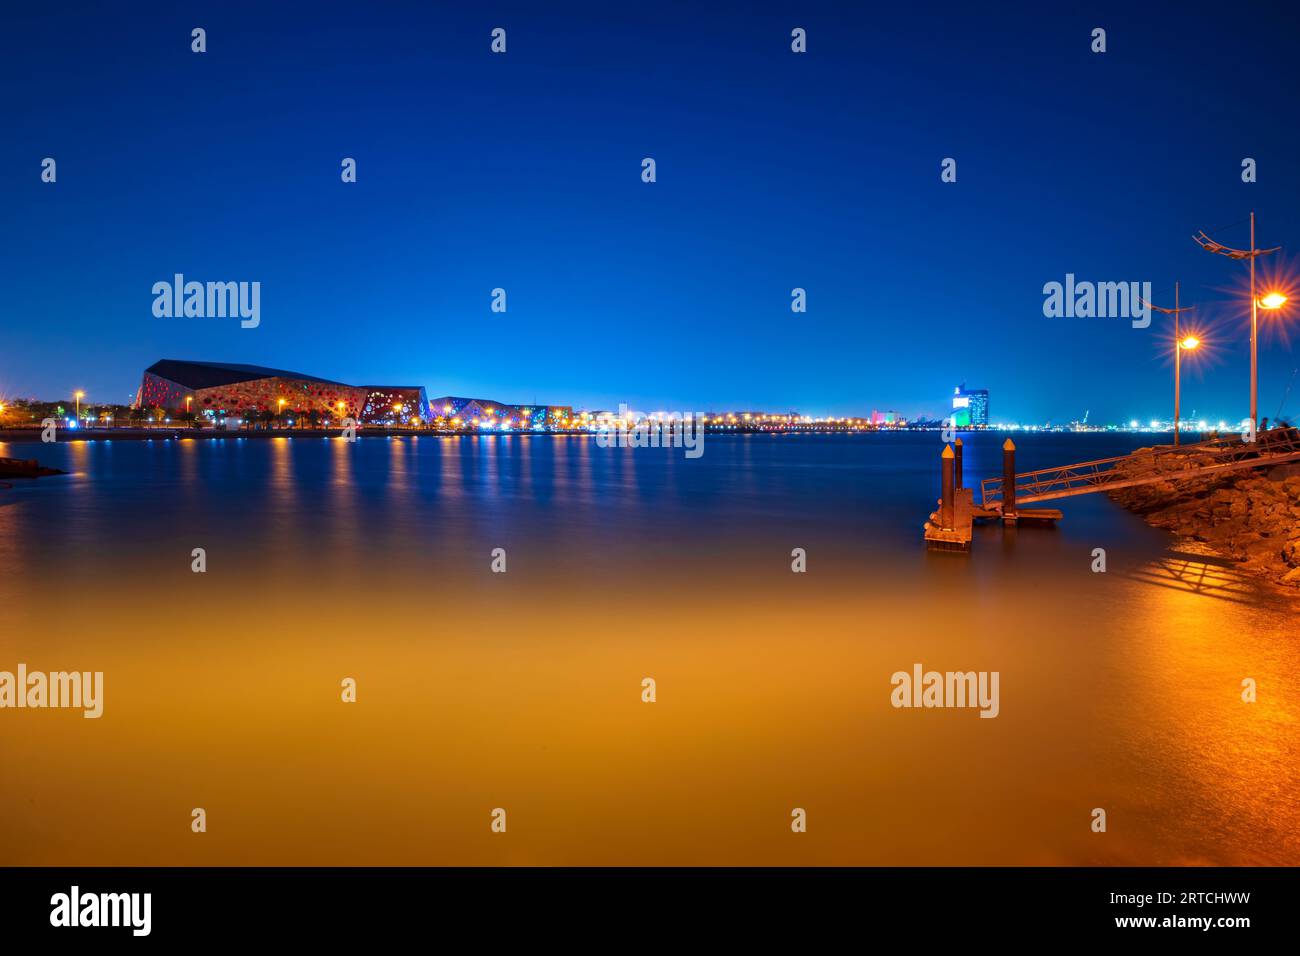 Vue sur la ville depuis le pont de la plage. Bâtiments et rivage visibles. Vue nocturne de la ville de Koweït et lumières Banque D'Images